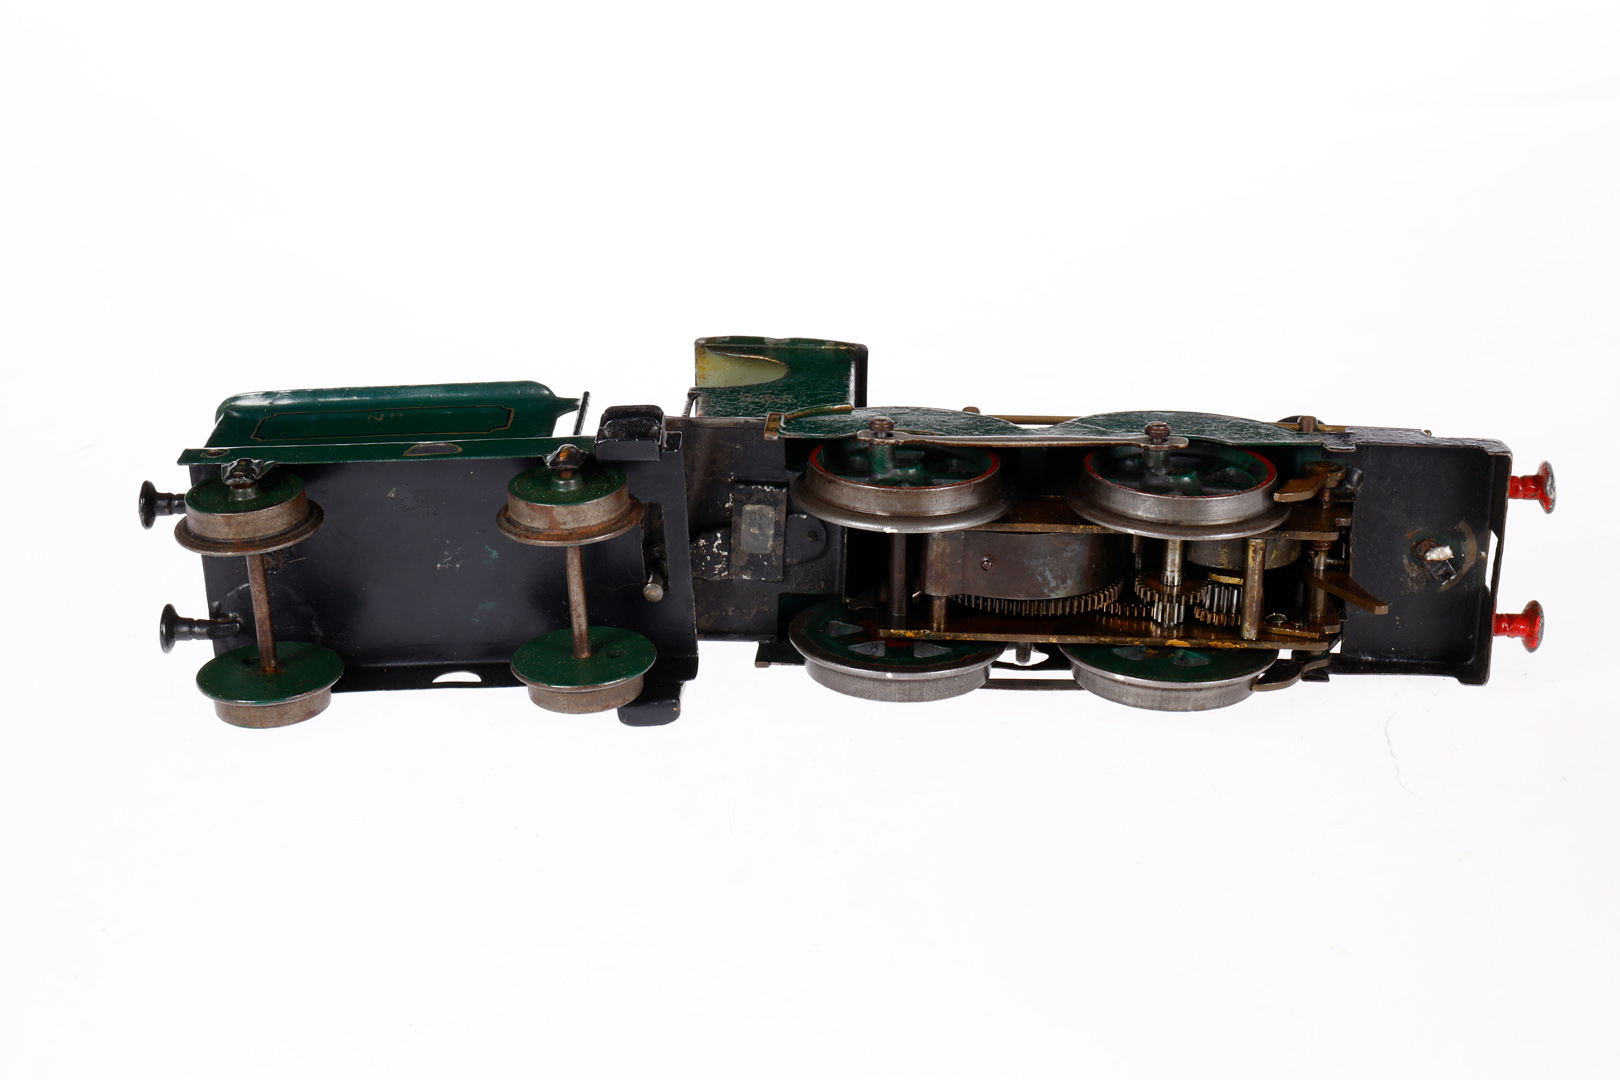 Eigenbau engl. B-Dampflok GNR, Spur 1, Uhrwerk intakt, grün/schwarz, mit Tender und Bremse, tw aus - Bild 4 aus 4